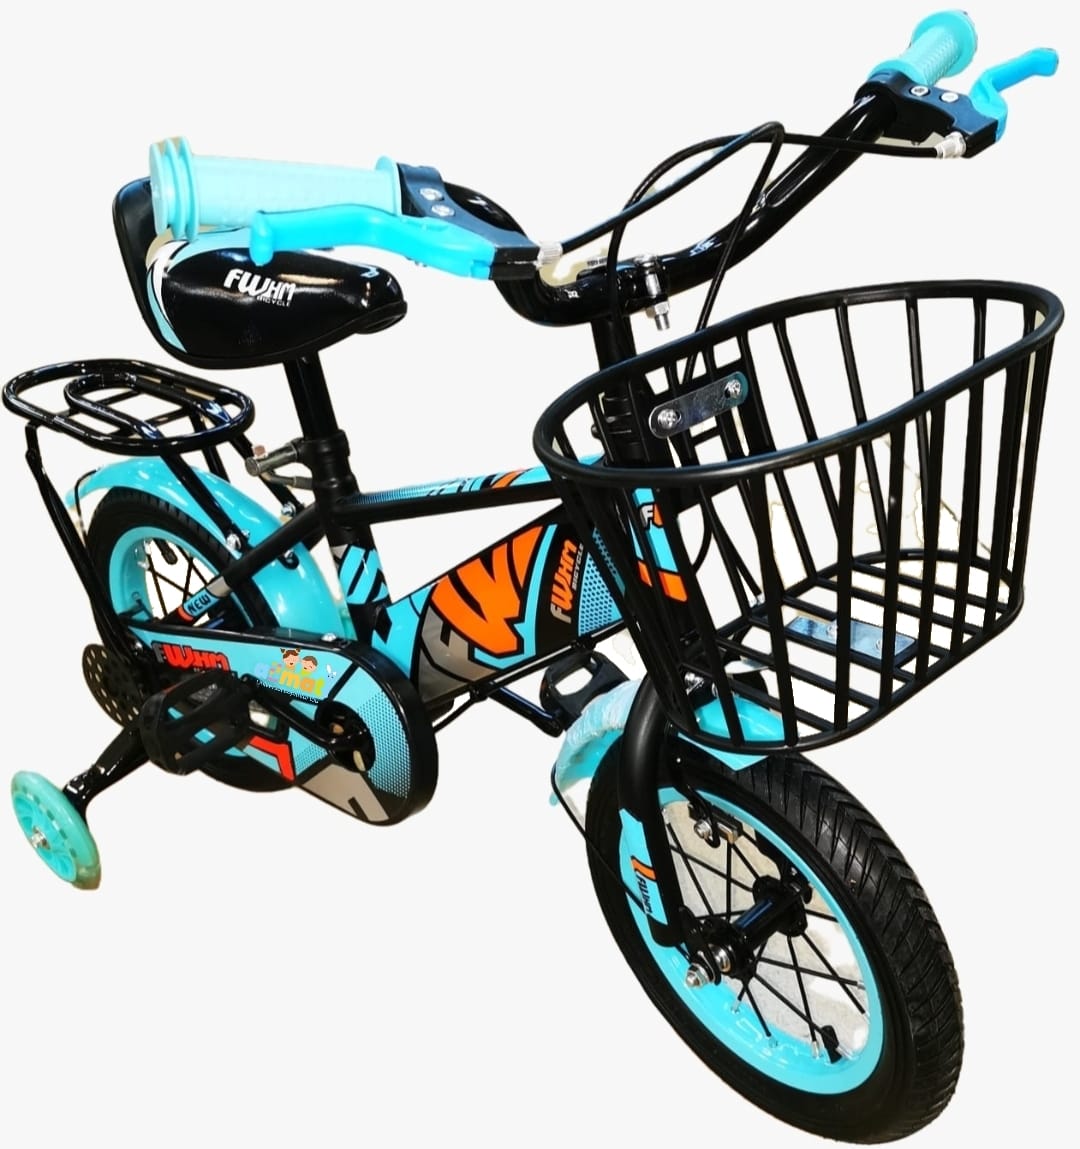 عمودي صفر قاس  Bicicleta Copii Cu Roti Ajutatoare 2-4 Ani, 12 Inch, Turcoaz » Allmati Shop